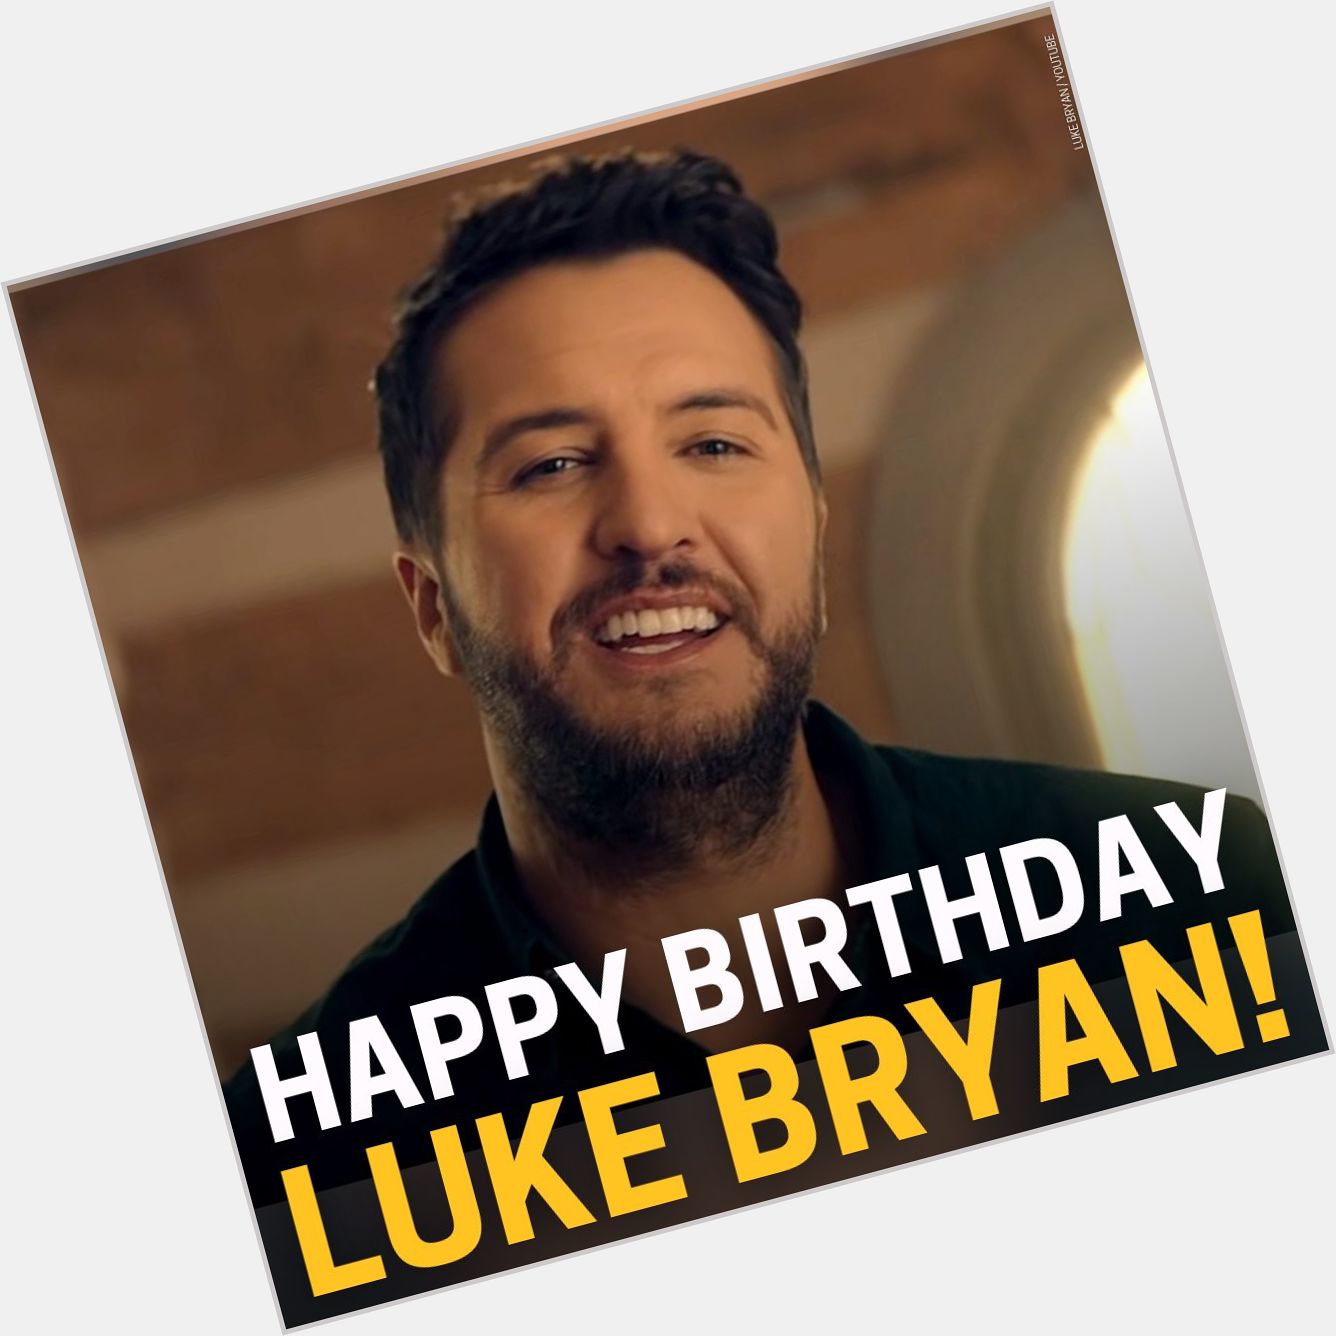 Happy birthday Luke Bryan! What is your favorite Luke Bryan song? 